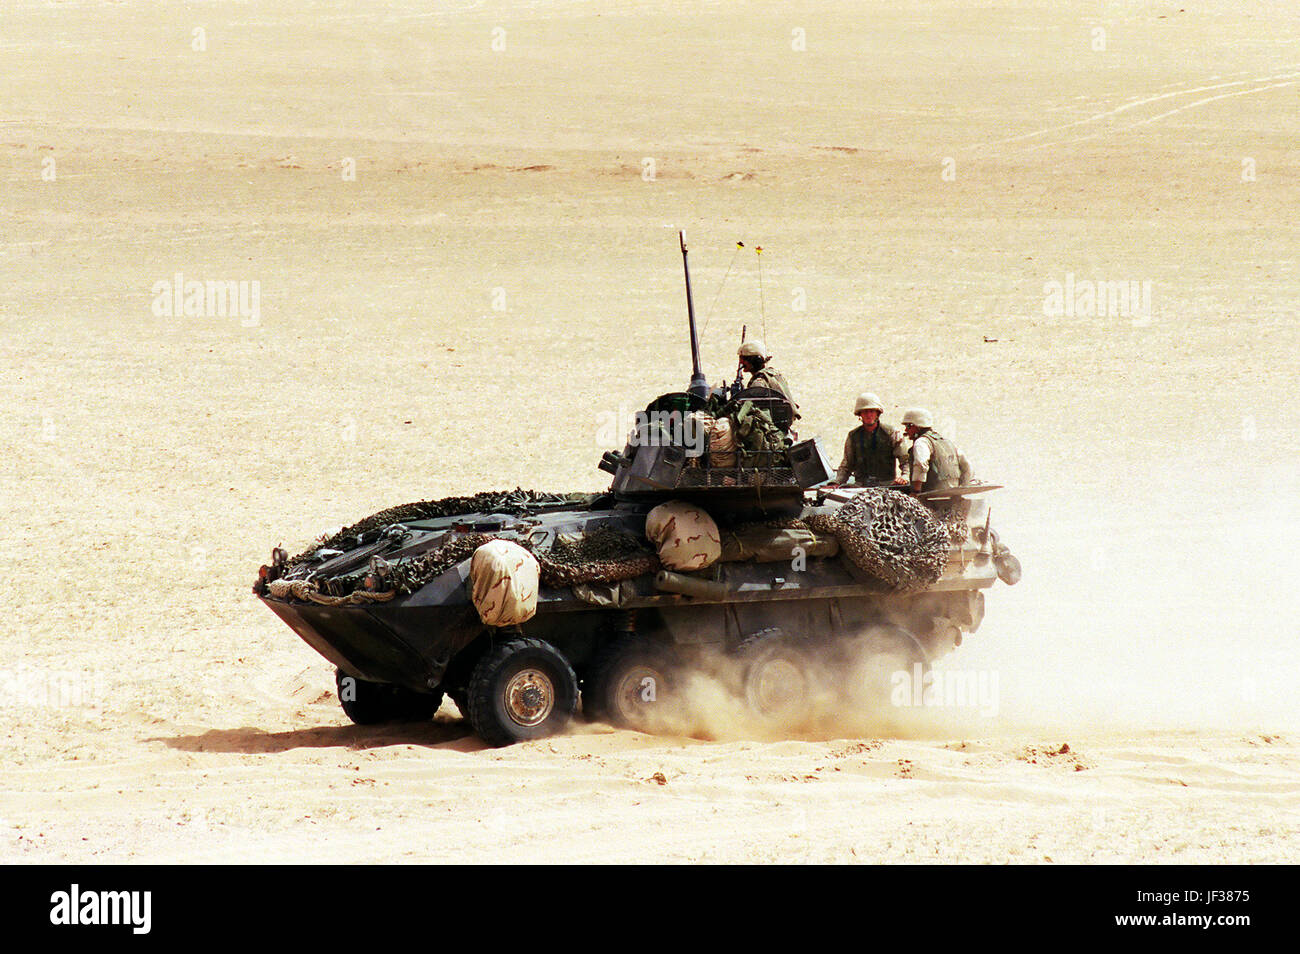 000408-D-9880W-156 eine US Marine Corps Light Armored Vehicle (LAV-25) Manöver komplettieren das Angebot zum Abschluss einer live-Feuer-Übung auf Udairi Training Range im Norden Kuwaits am 8. April 2000.  Der LAV-25 ist ein All-Terrain, Allwetter-Fahrzeug mit Nacht-Funktionen und ist mit einem 25 mm Turm montierte Kette Geschütz und einem 7,62 mm Maschinengewehr bewaffnet.  Das Fahrzeug ist in der Lage, den Transport von sechs Marines im Inneren des Rumpfes.  Der LAV ist der 1. Licht Armored Reconnaissance Battalion, 15. Marine Expeditionary Unit beigefügt.  DoD-Foto von R. D. Ward.  (Freigegeben) Stockfoto